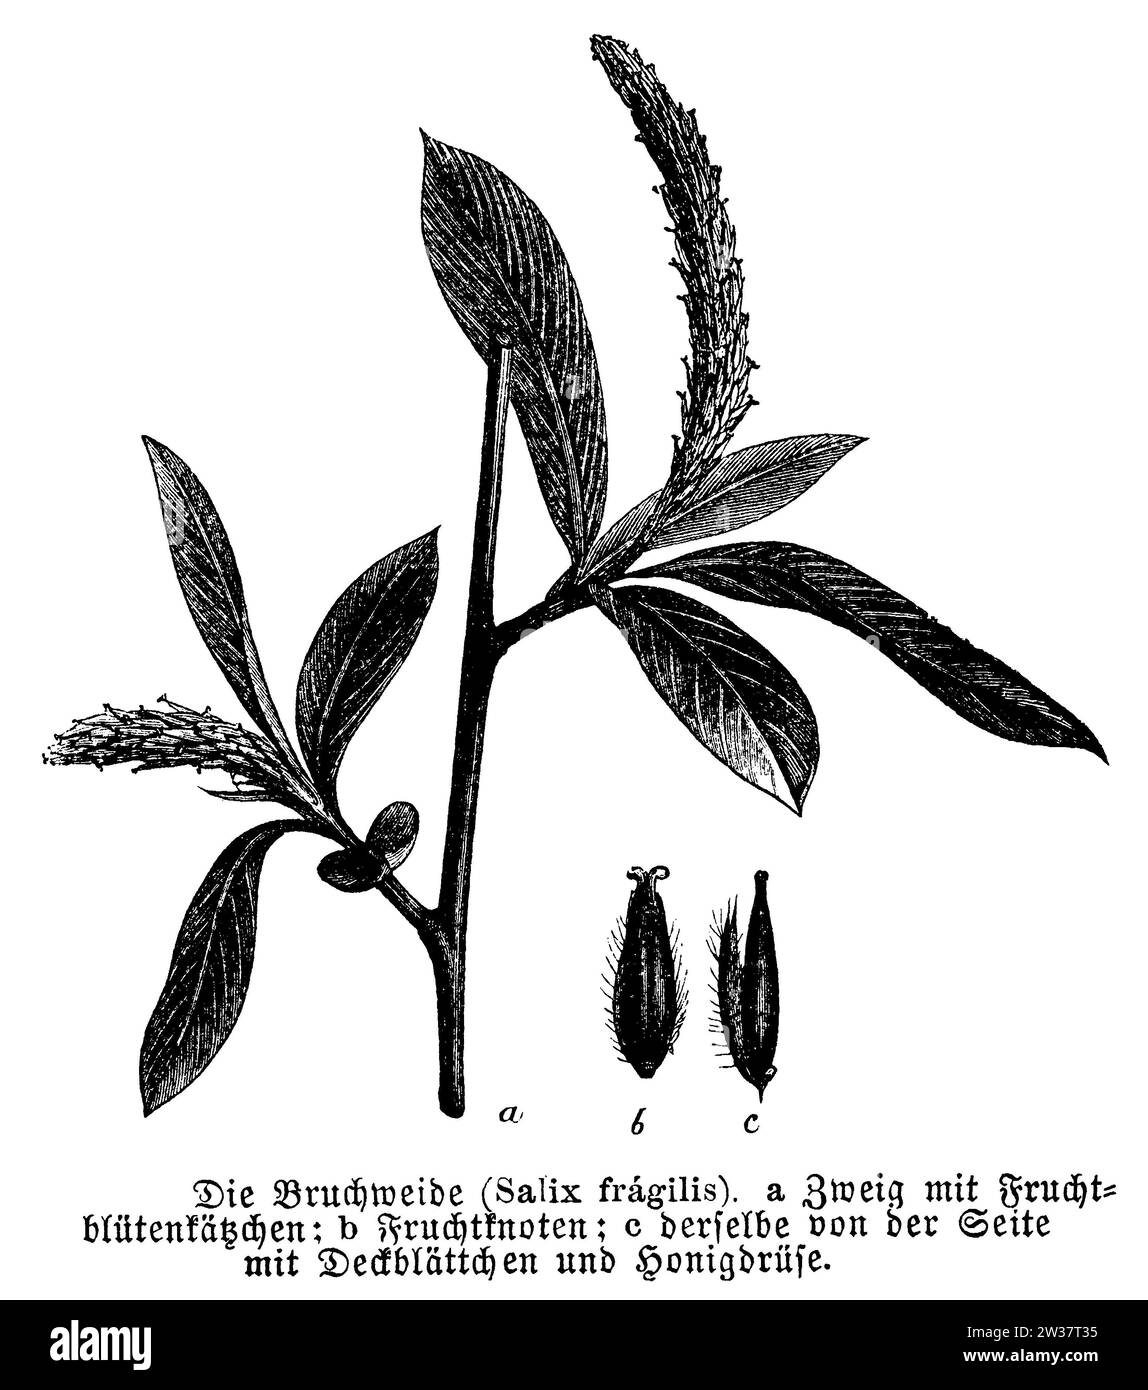 Salix fragilis mit Blüte und Frucht, Salix fragilis, anonym (Botanikbuch, 1889), Bruch-Weide mit Blüte und Frucht, Saule fragile, avec fleur et Frucht Stockfoto